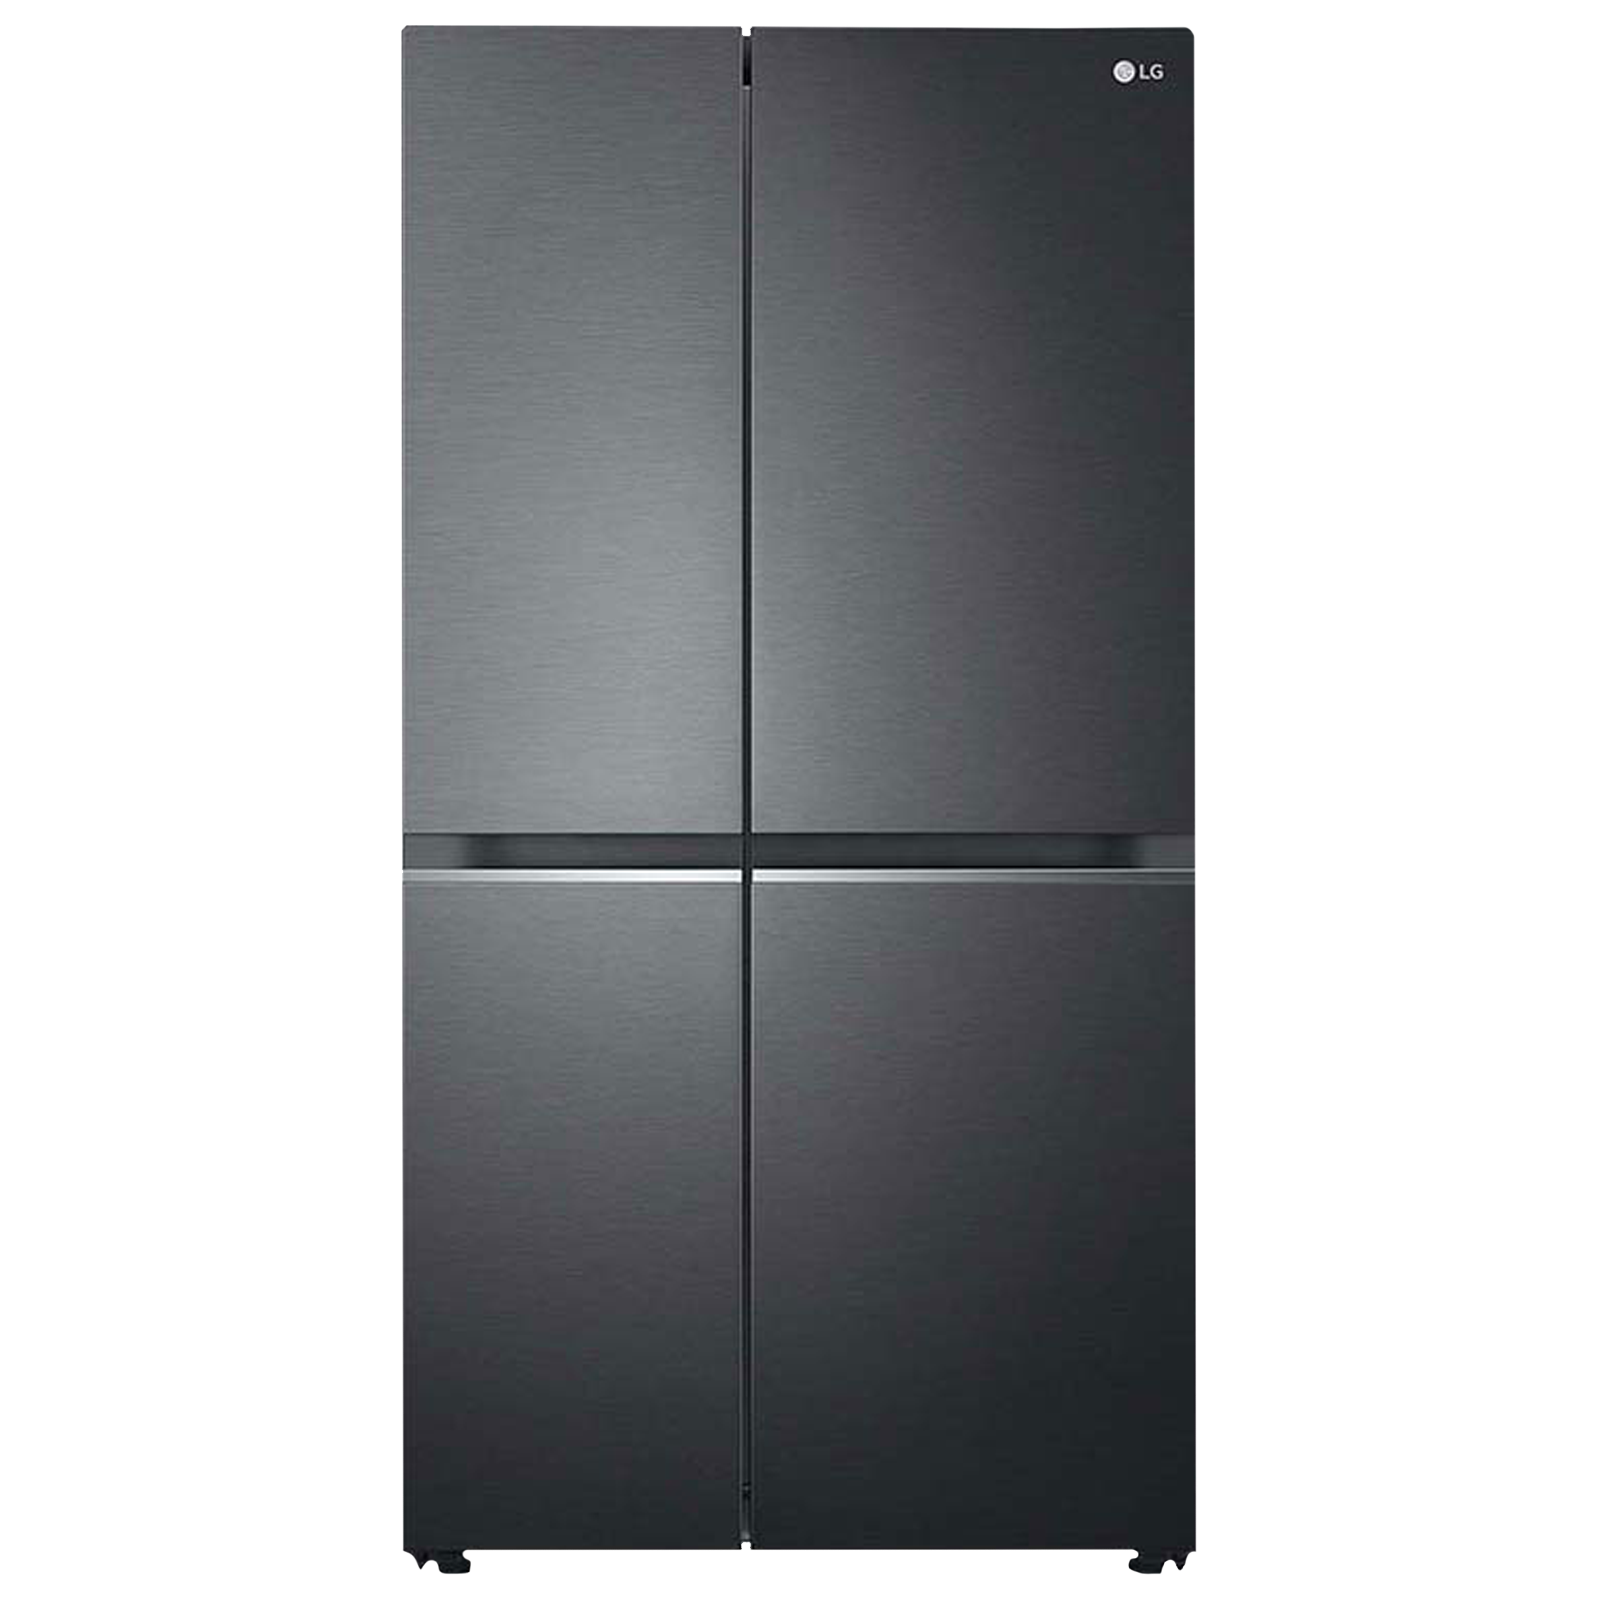 LG 687 L Double Door Side-by-Side Inverter Refrigerator (GC-B247SQUV, Matt Black)